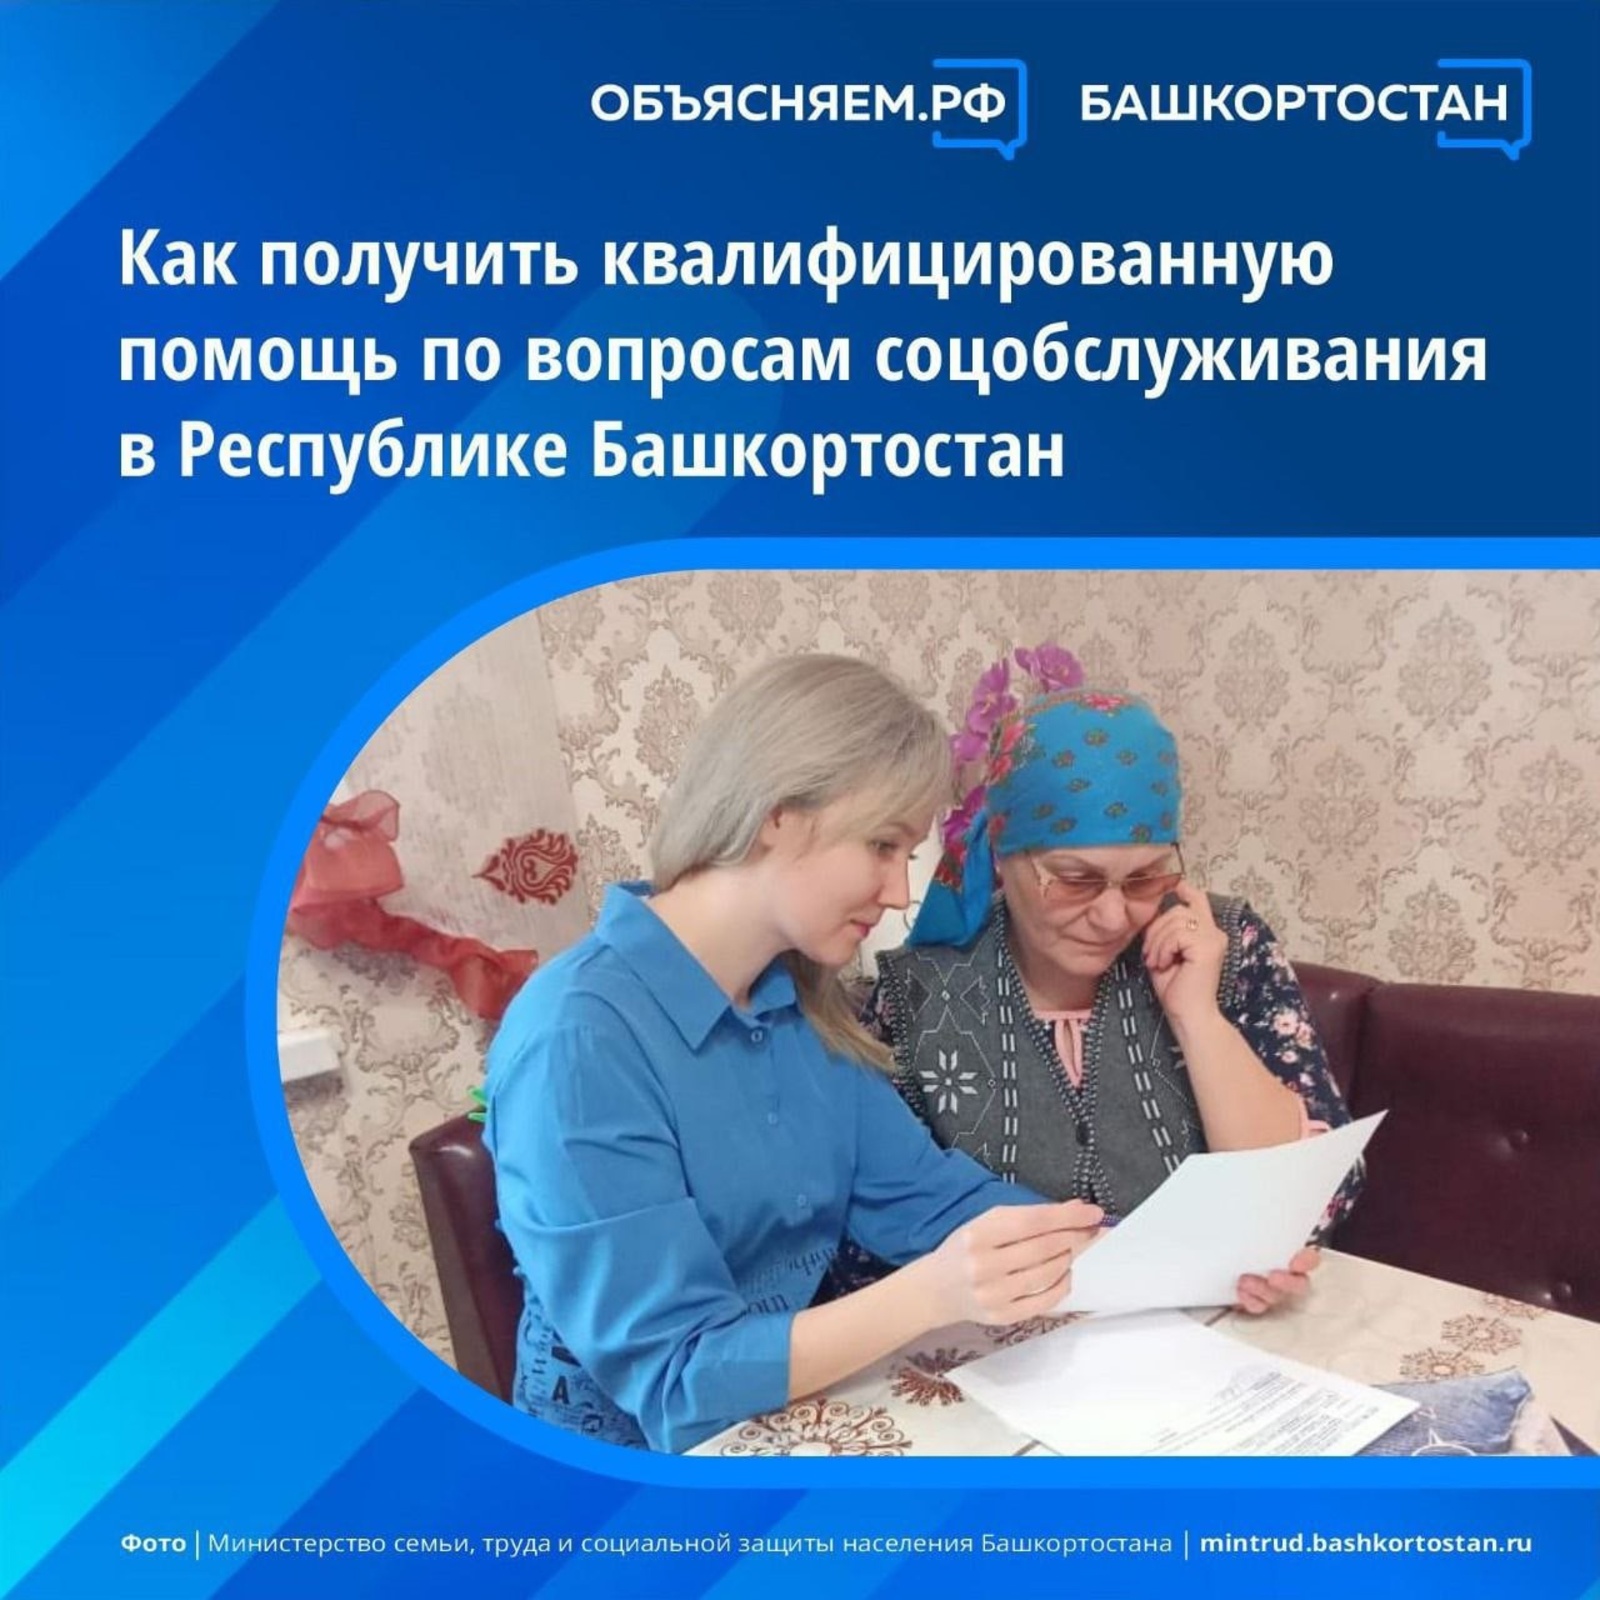 Получить квалифицированную помощь по вопросам соцобслуживания в Башкортостане можно по телефону горячей линии